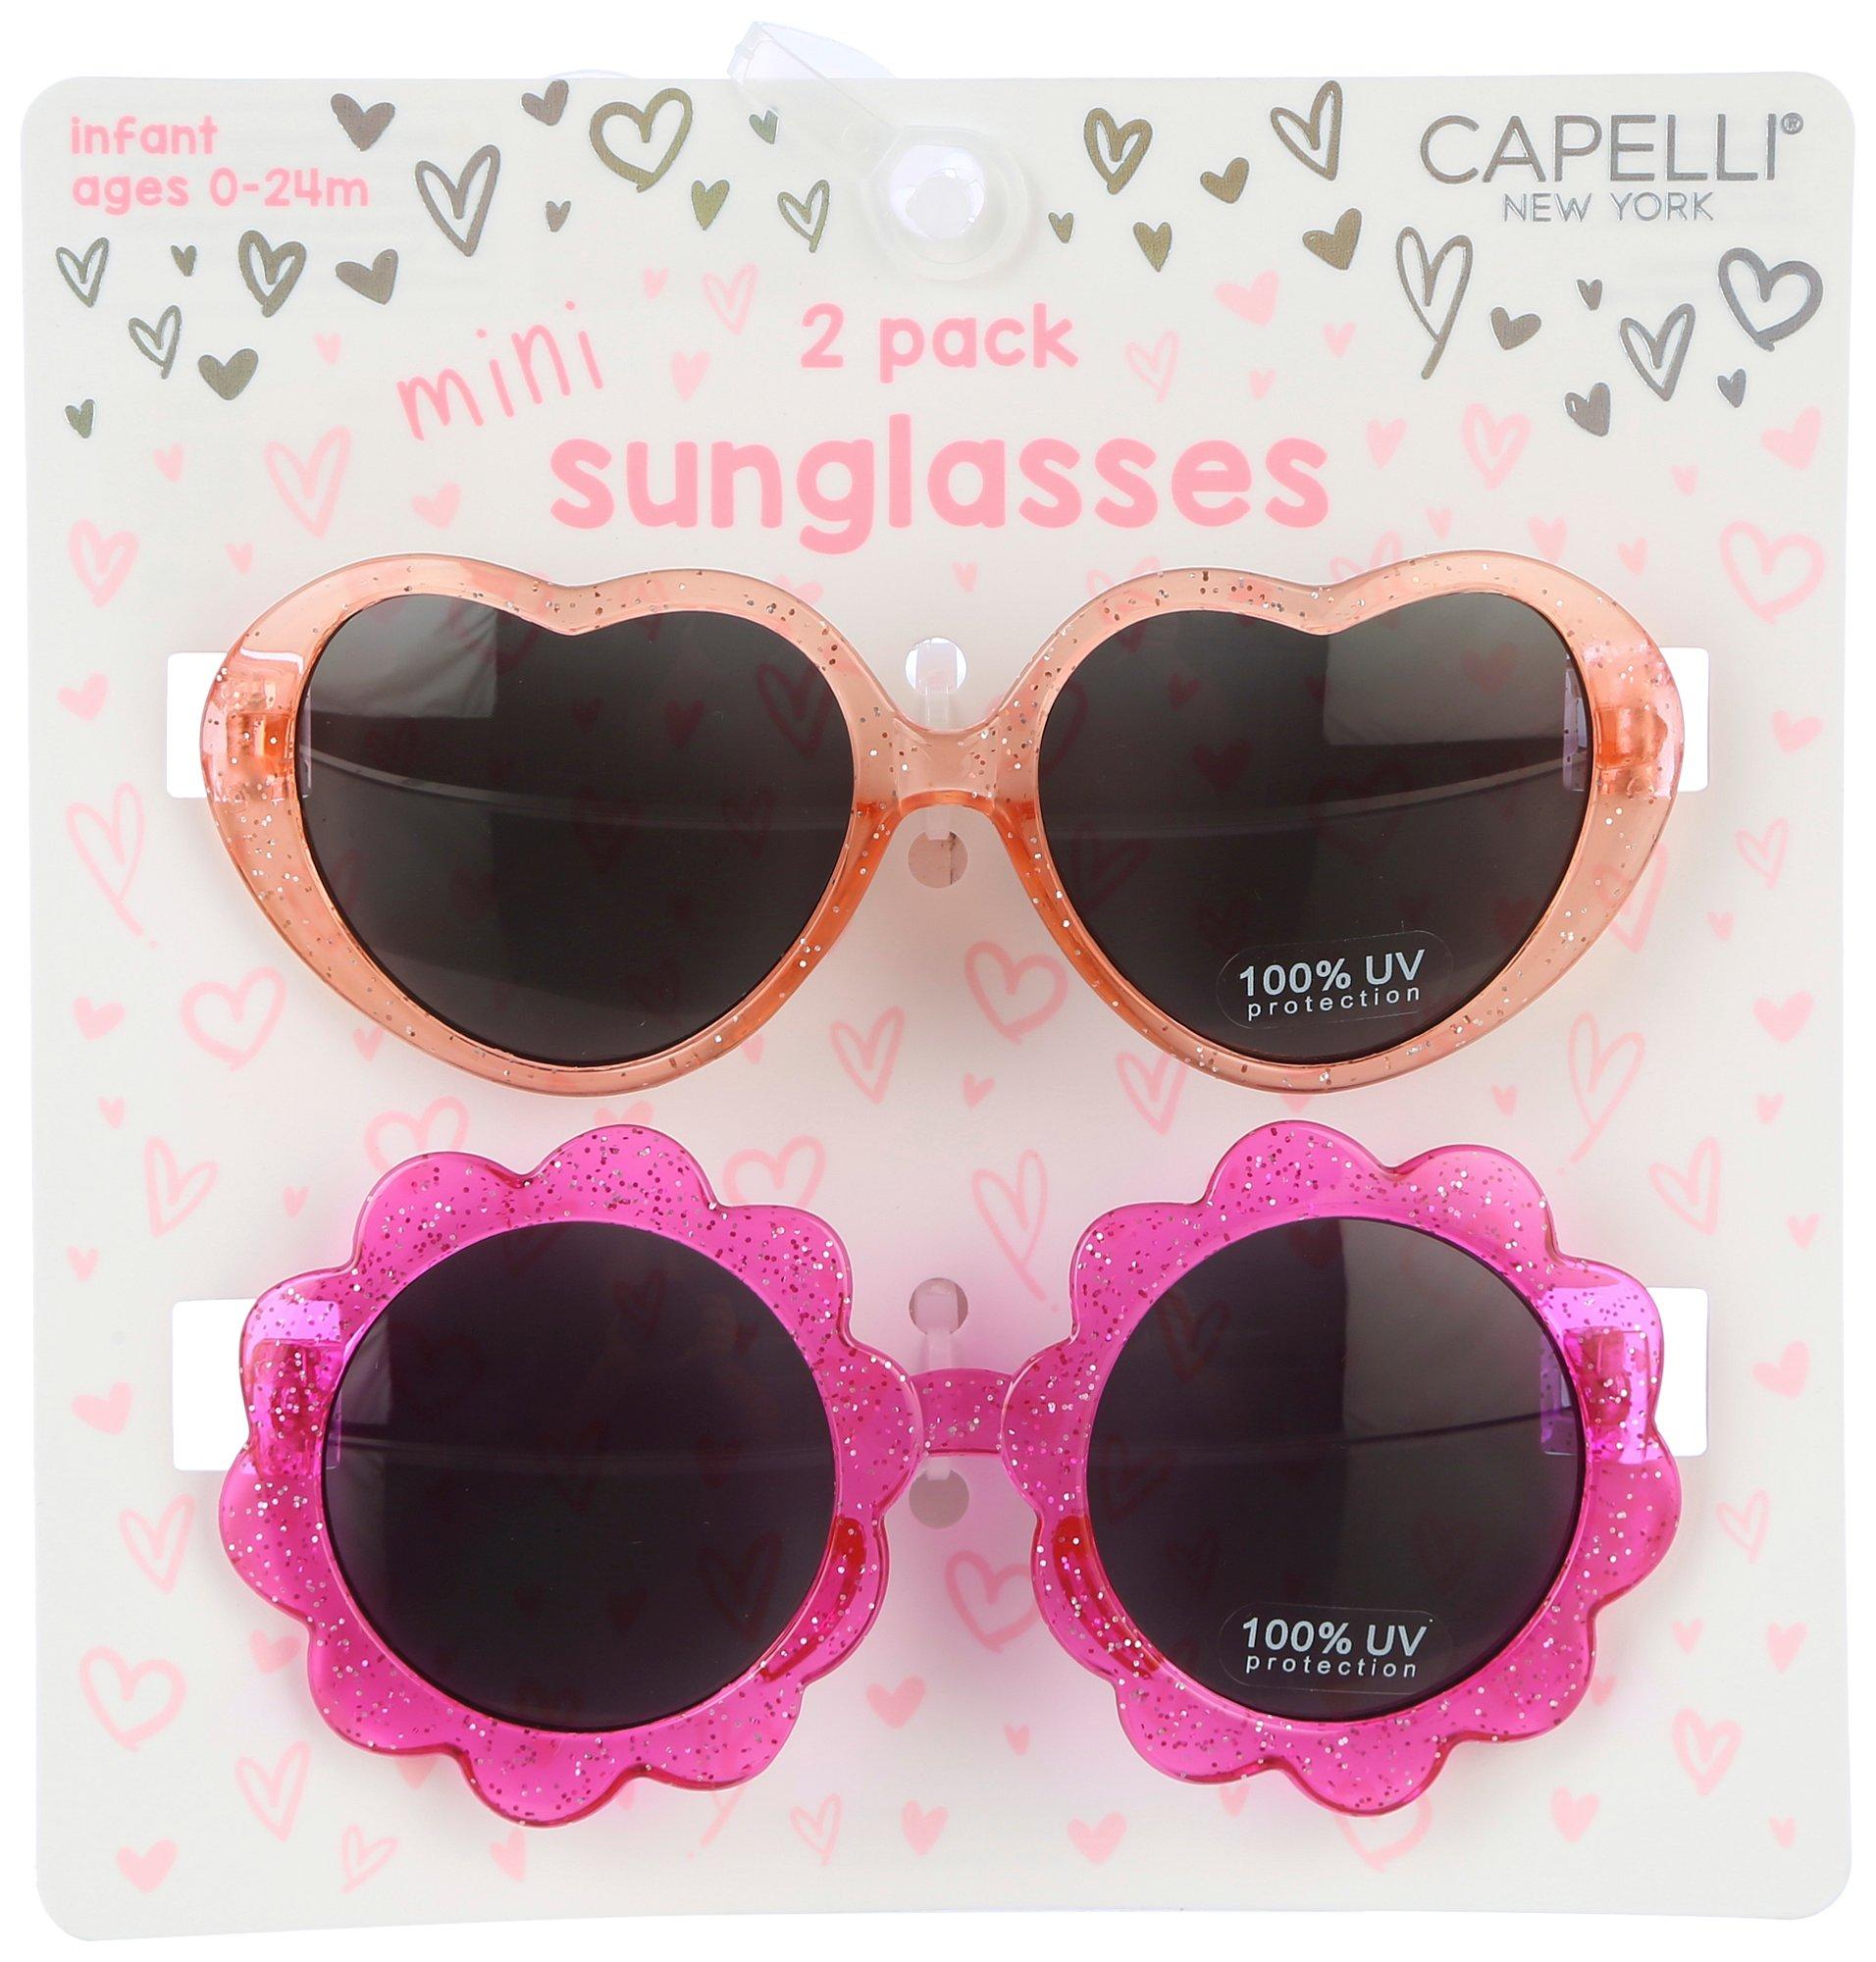 Capelli New York Baby Girls 2 Pk. Mini Sunglasses